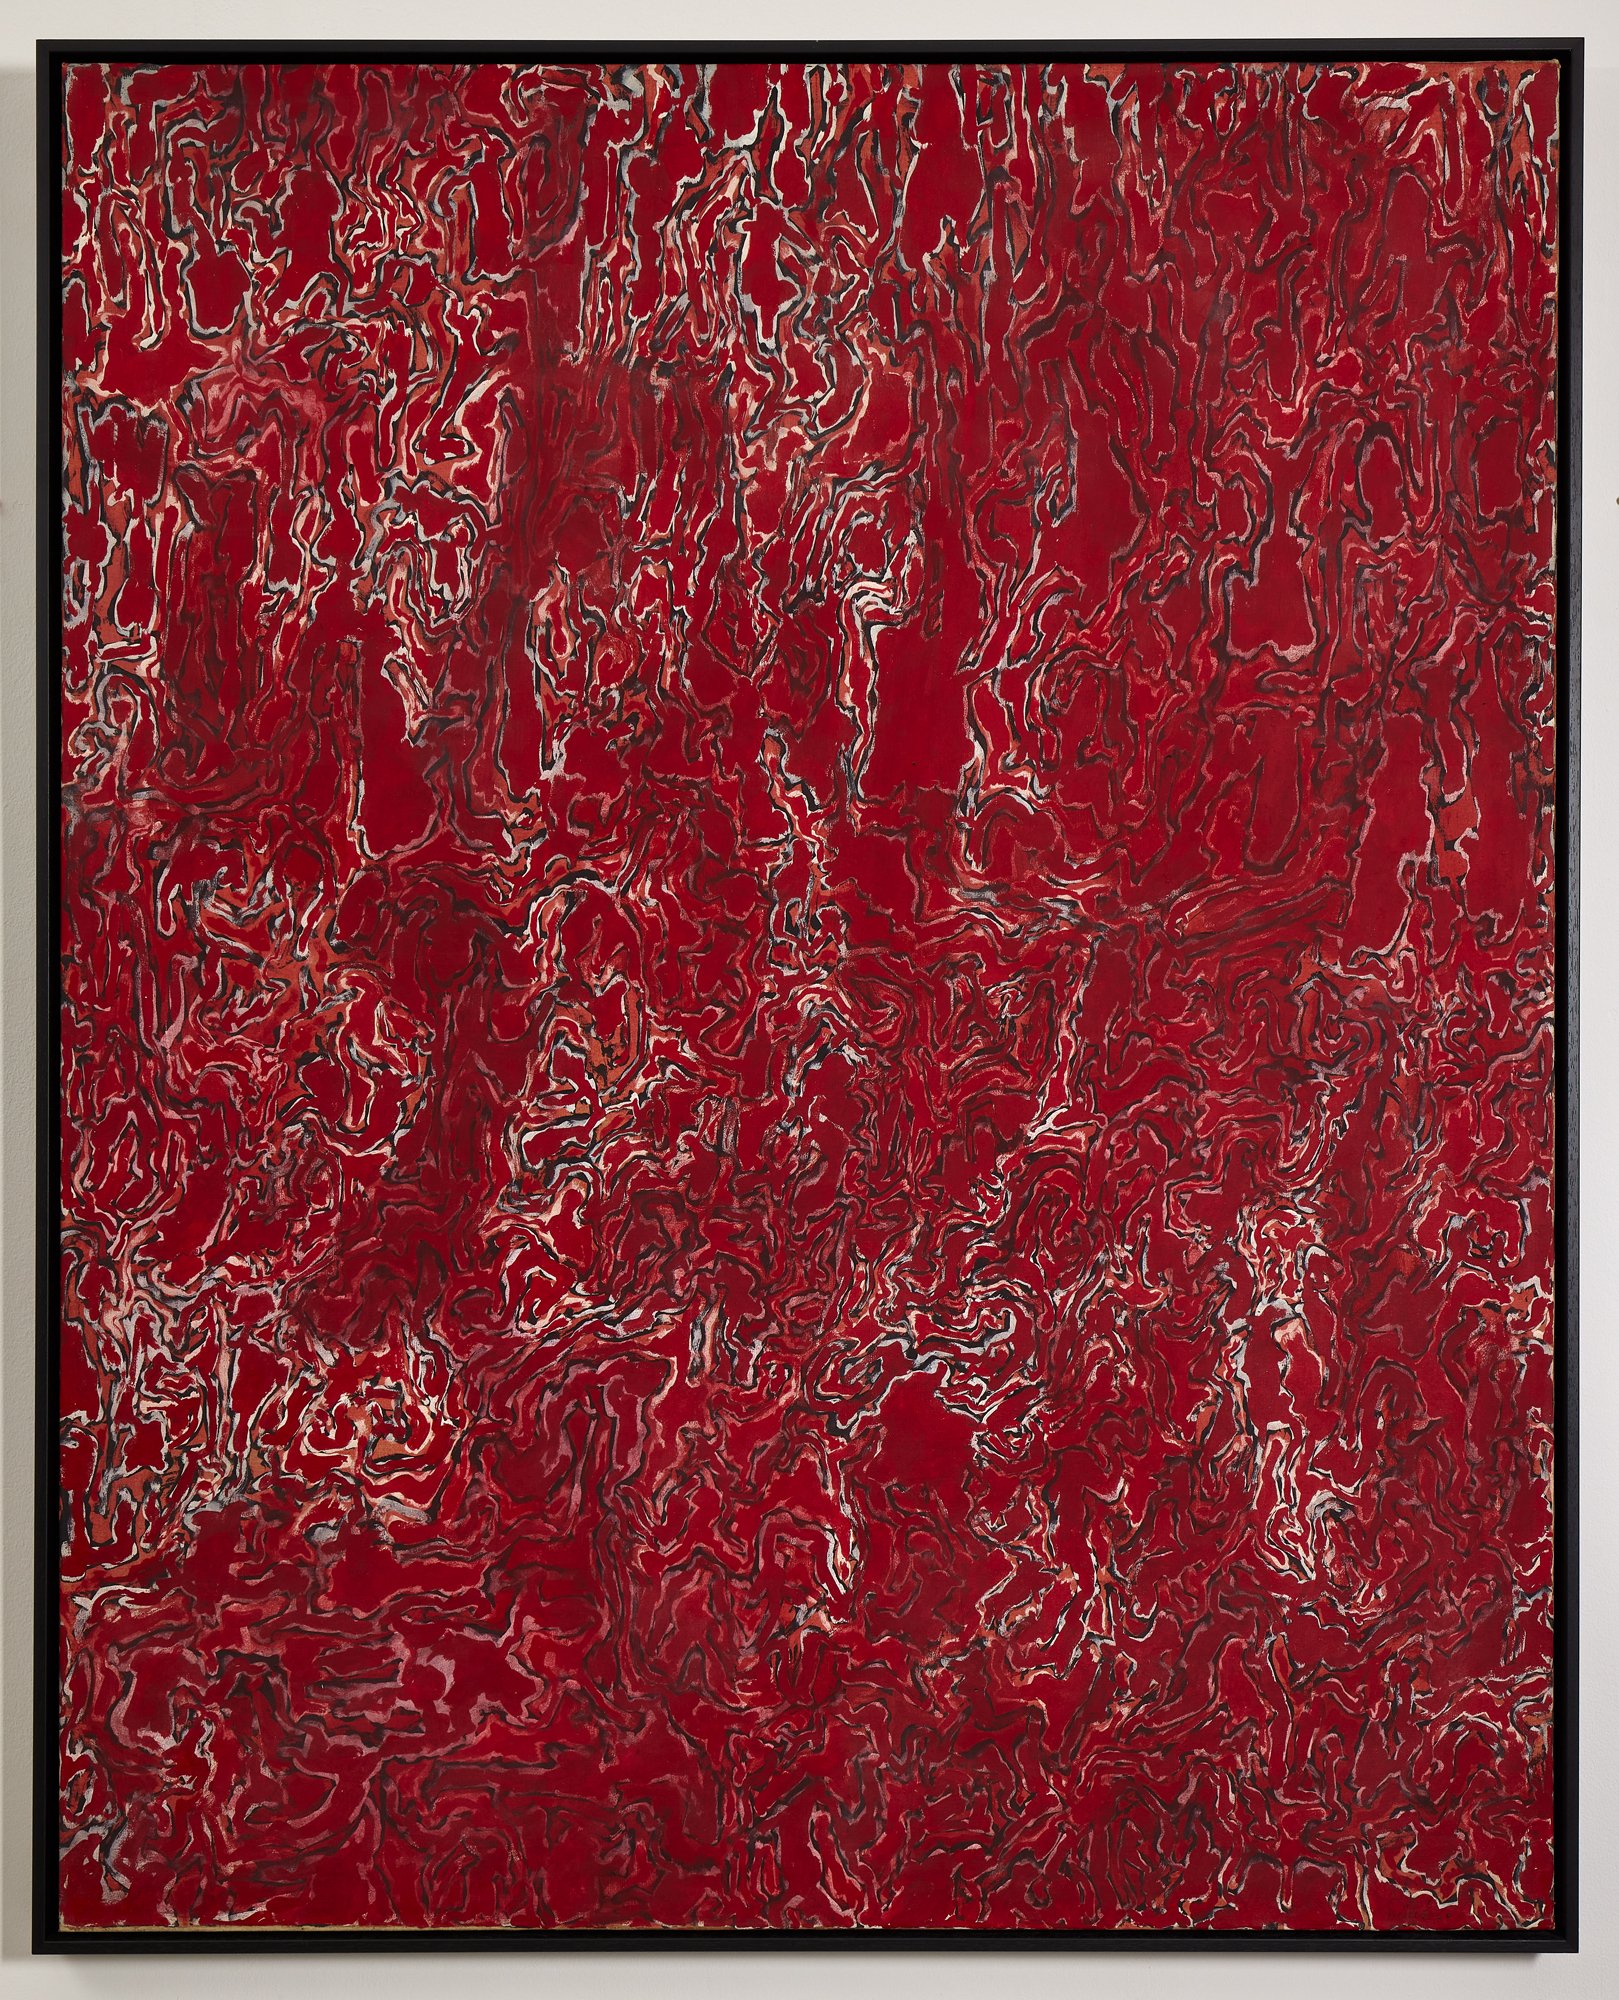 Luigi Boille, Ritmo continuo rosso, 1960, oil on canvas, 162 x 130 cm (LBo303455)_A